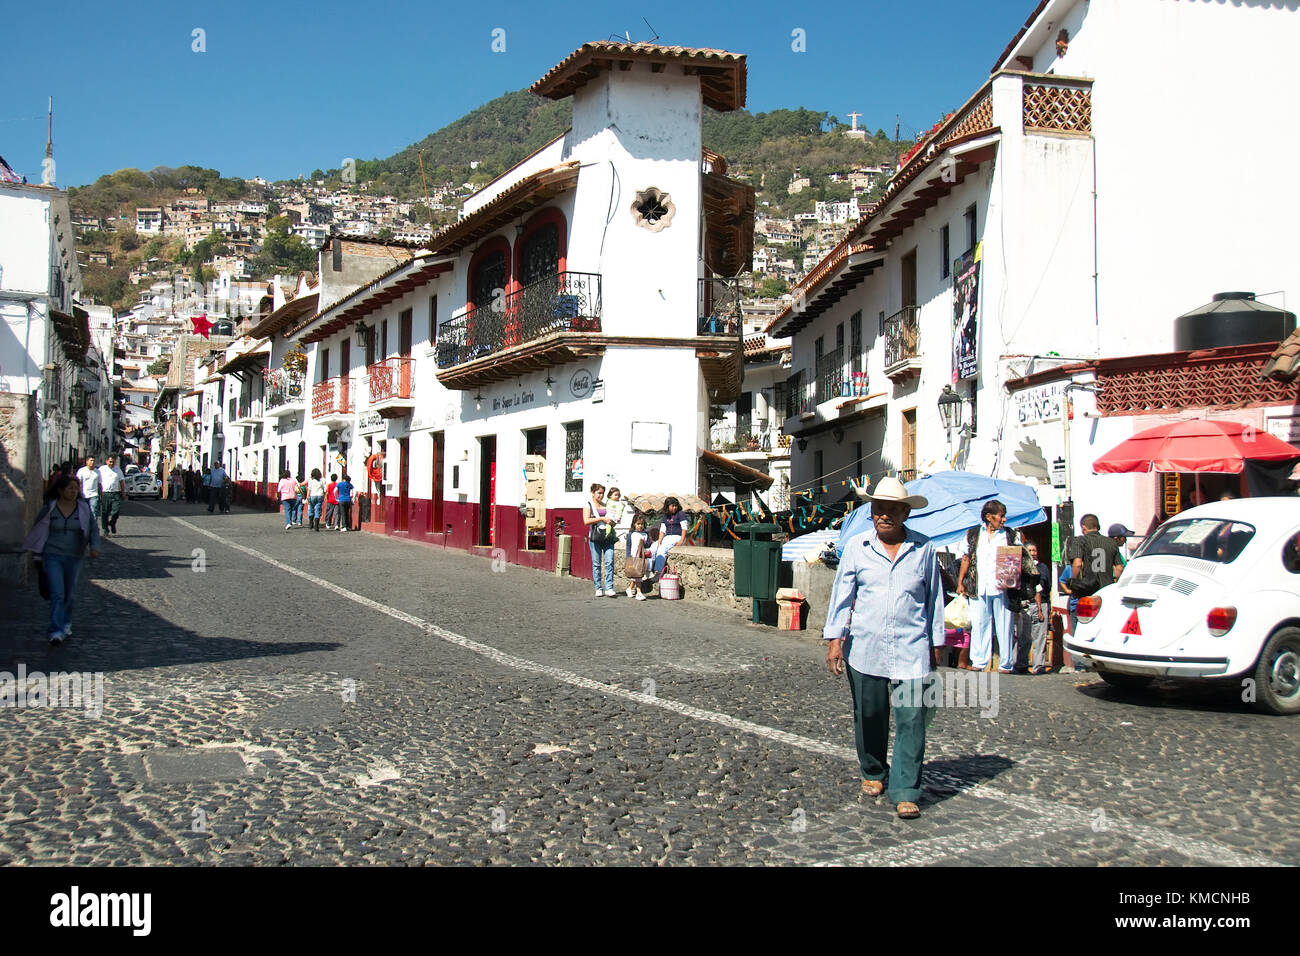 Taxco, Guerrero, Mexique - 2017 : une vue typique de la ville, aux rues pavées et maisons blanches et rouges avec des toits de tuile Banque D'Images